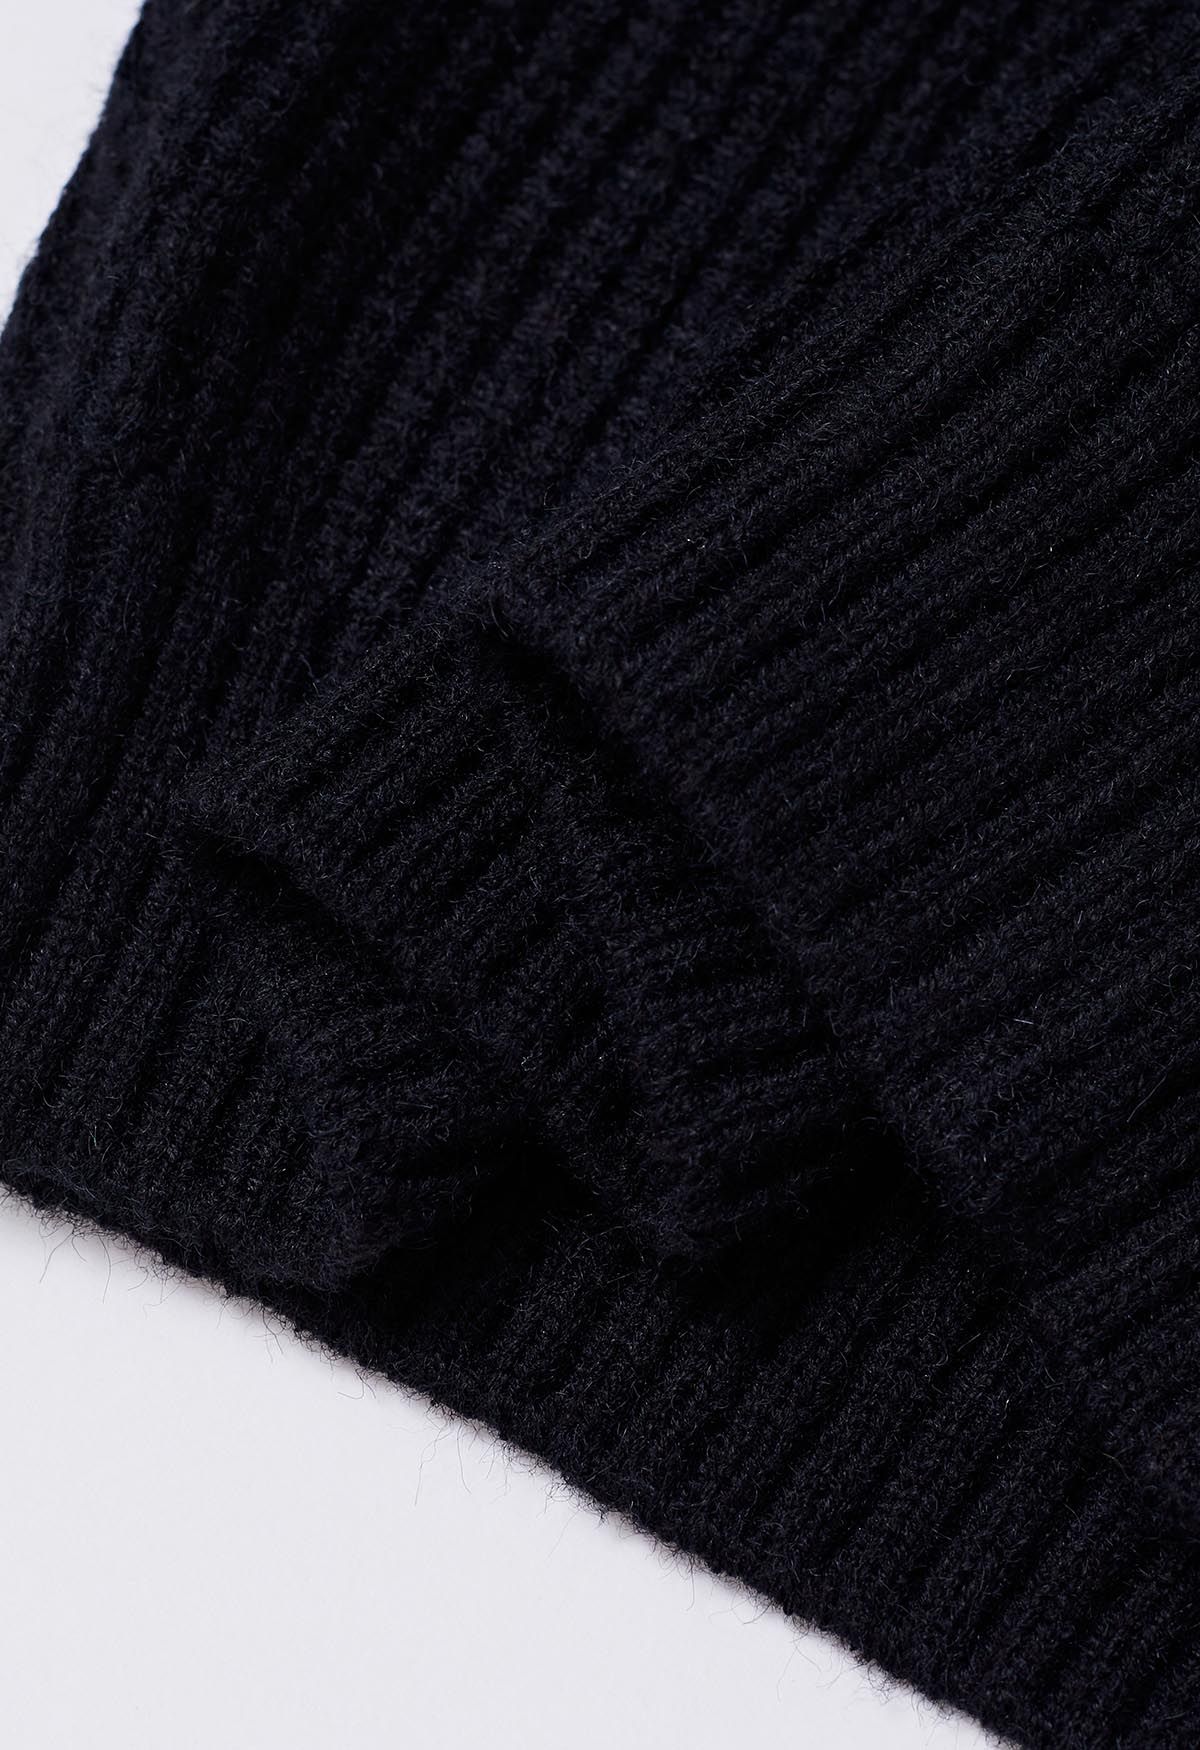 Suéter de punto de manga corta con cuello simulado en negro